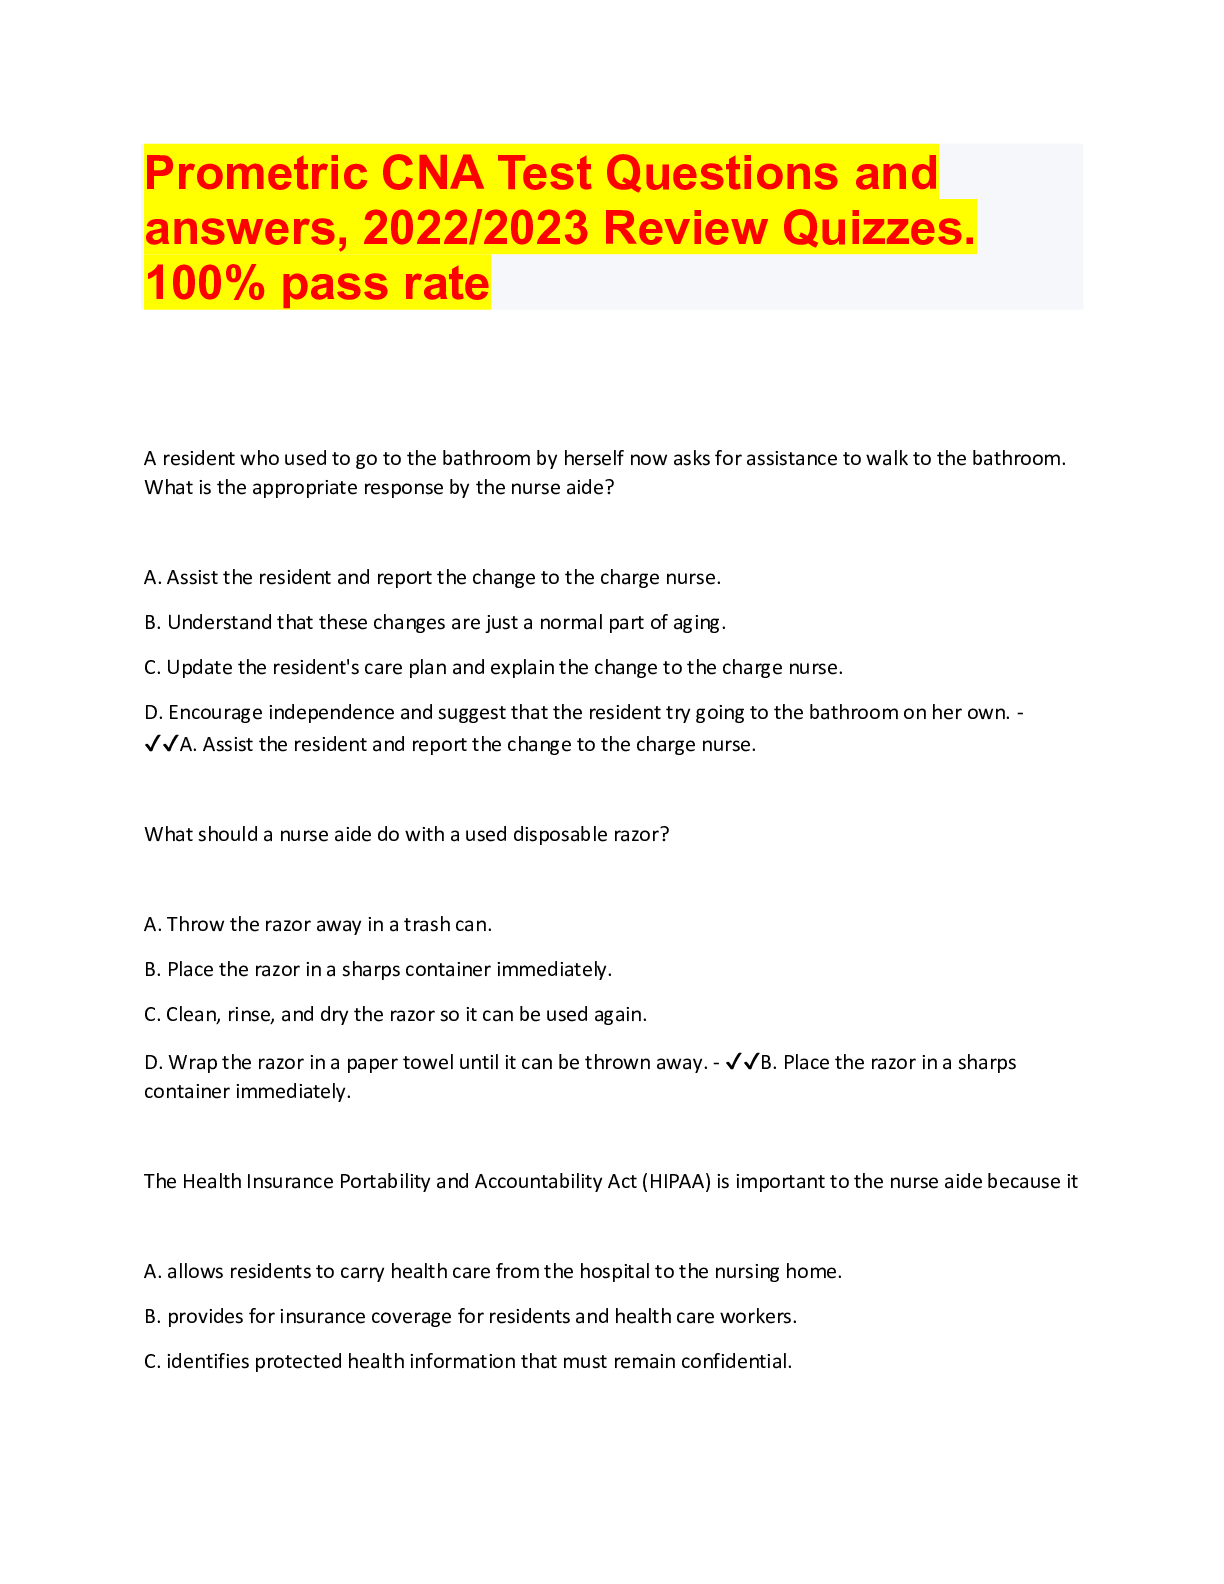 actual cna test questions